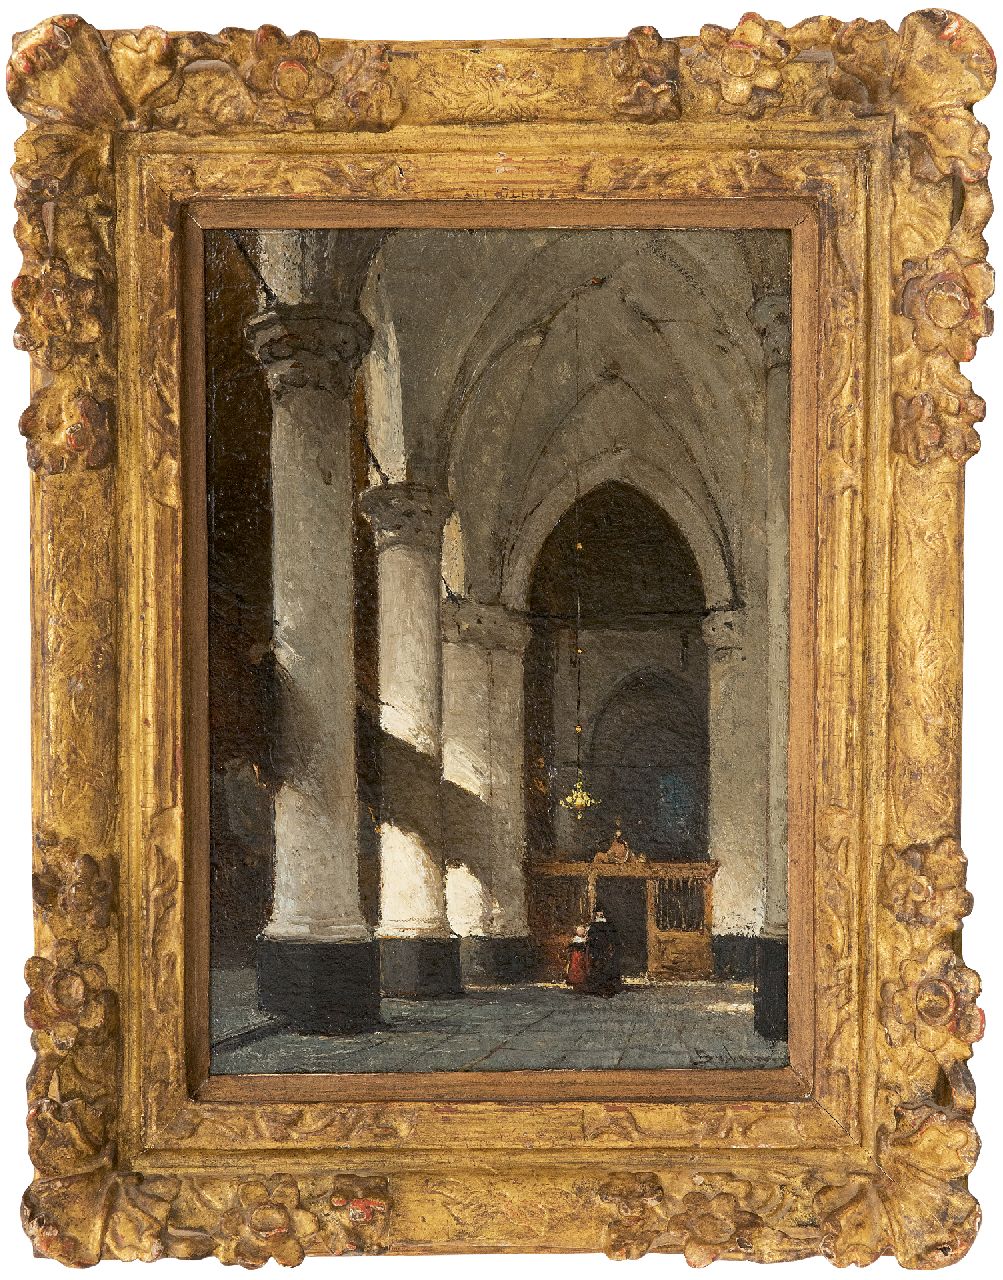 Bosboom J.  | Johannes Bosboom | Schilderijen te koop aangeboden | Interieur van de Grote of Sint-Jacobskerk in Den Haag, olieverf op paneel 24,5 x 17,6 cm, gesigneerd rechtsonder